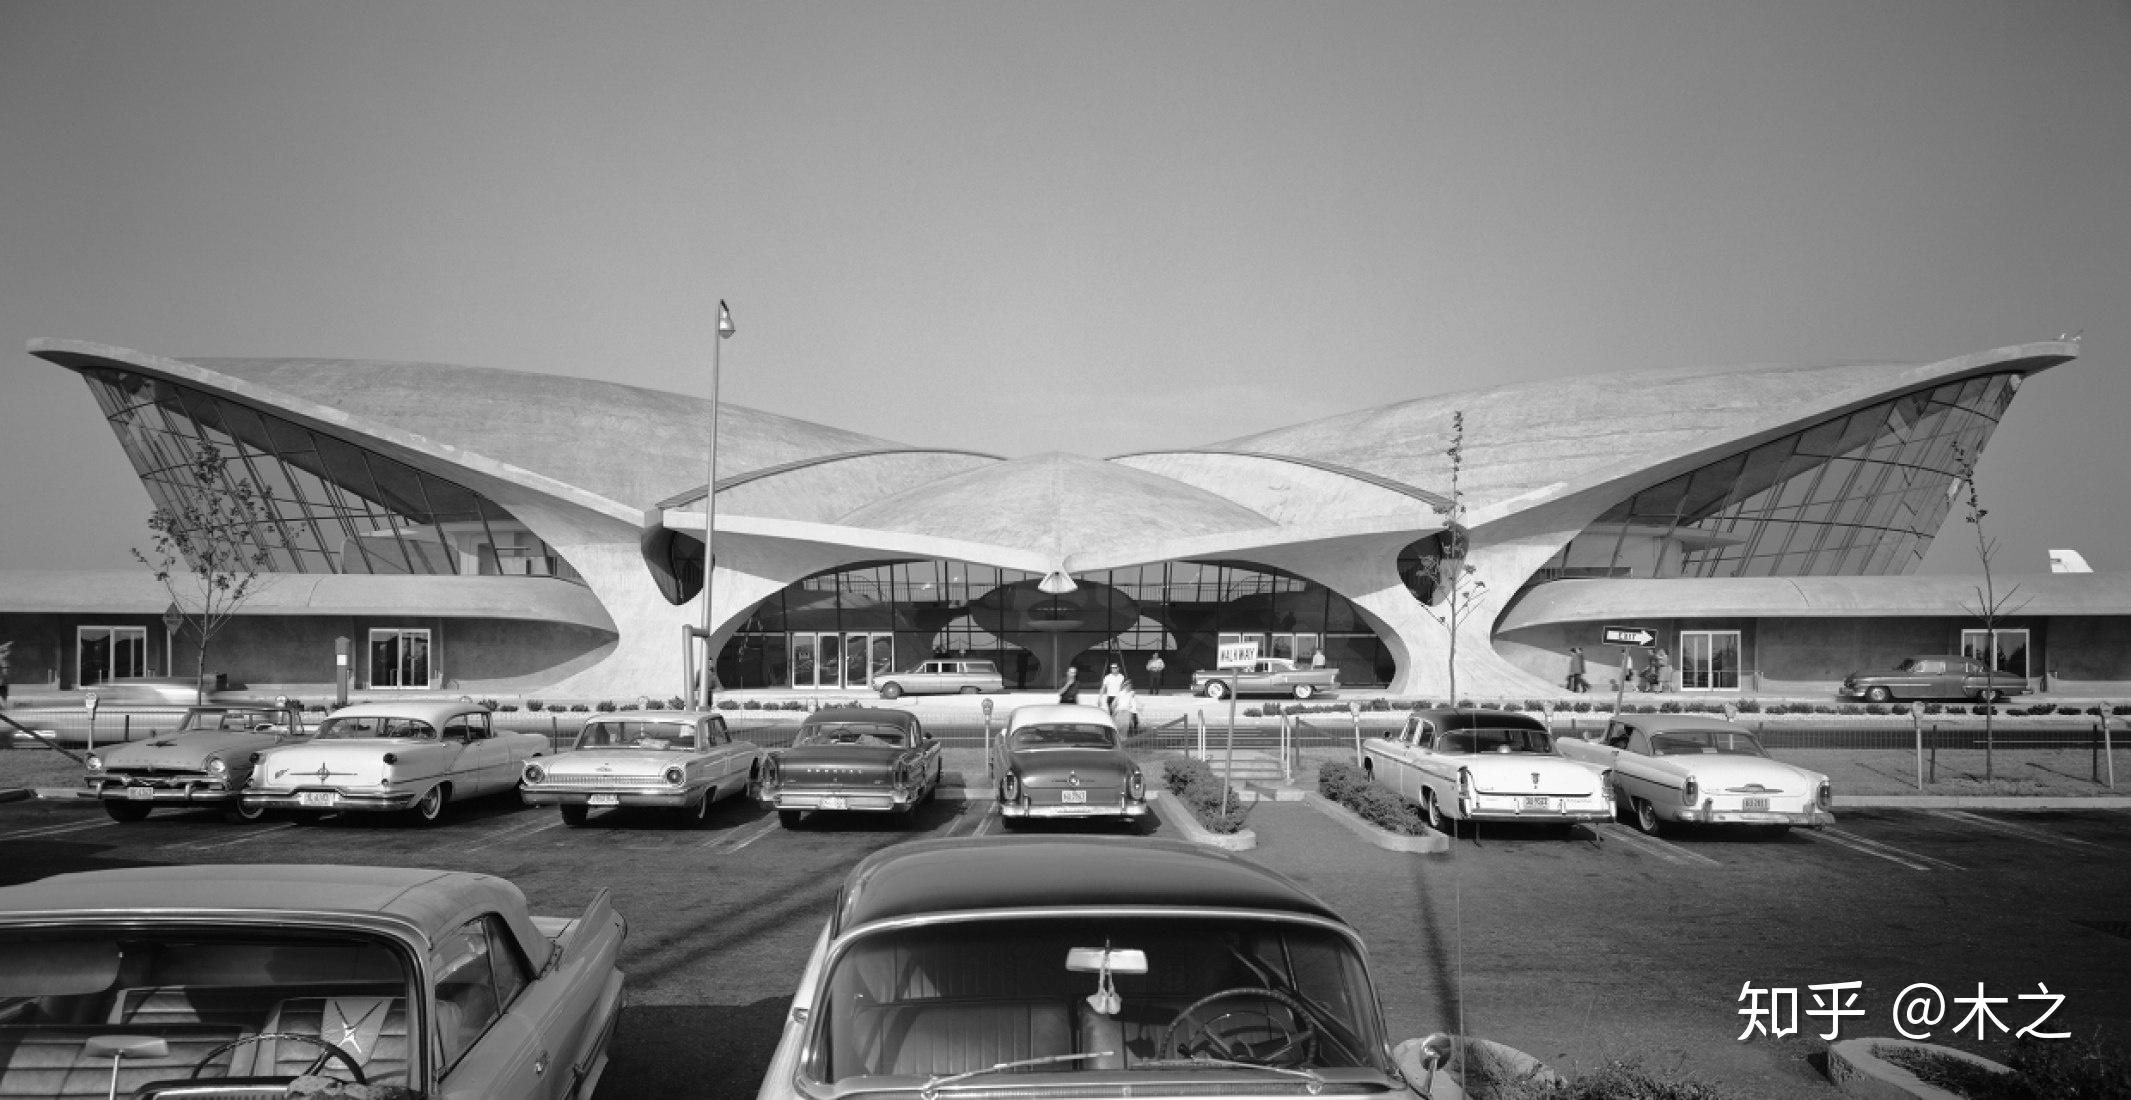 肯尼迪国际机场(jfk),时光飞逝至1962年 